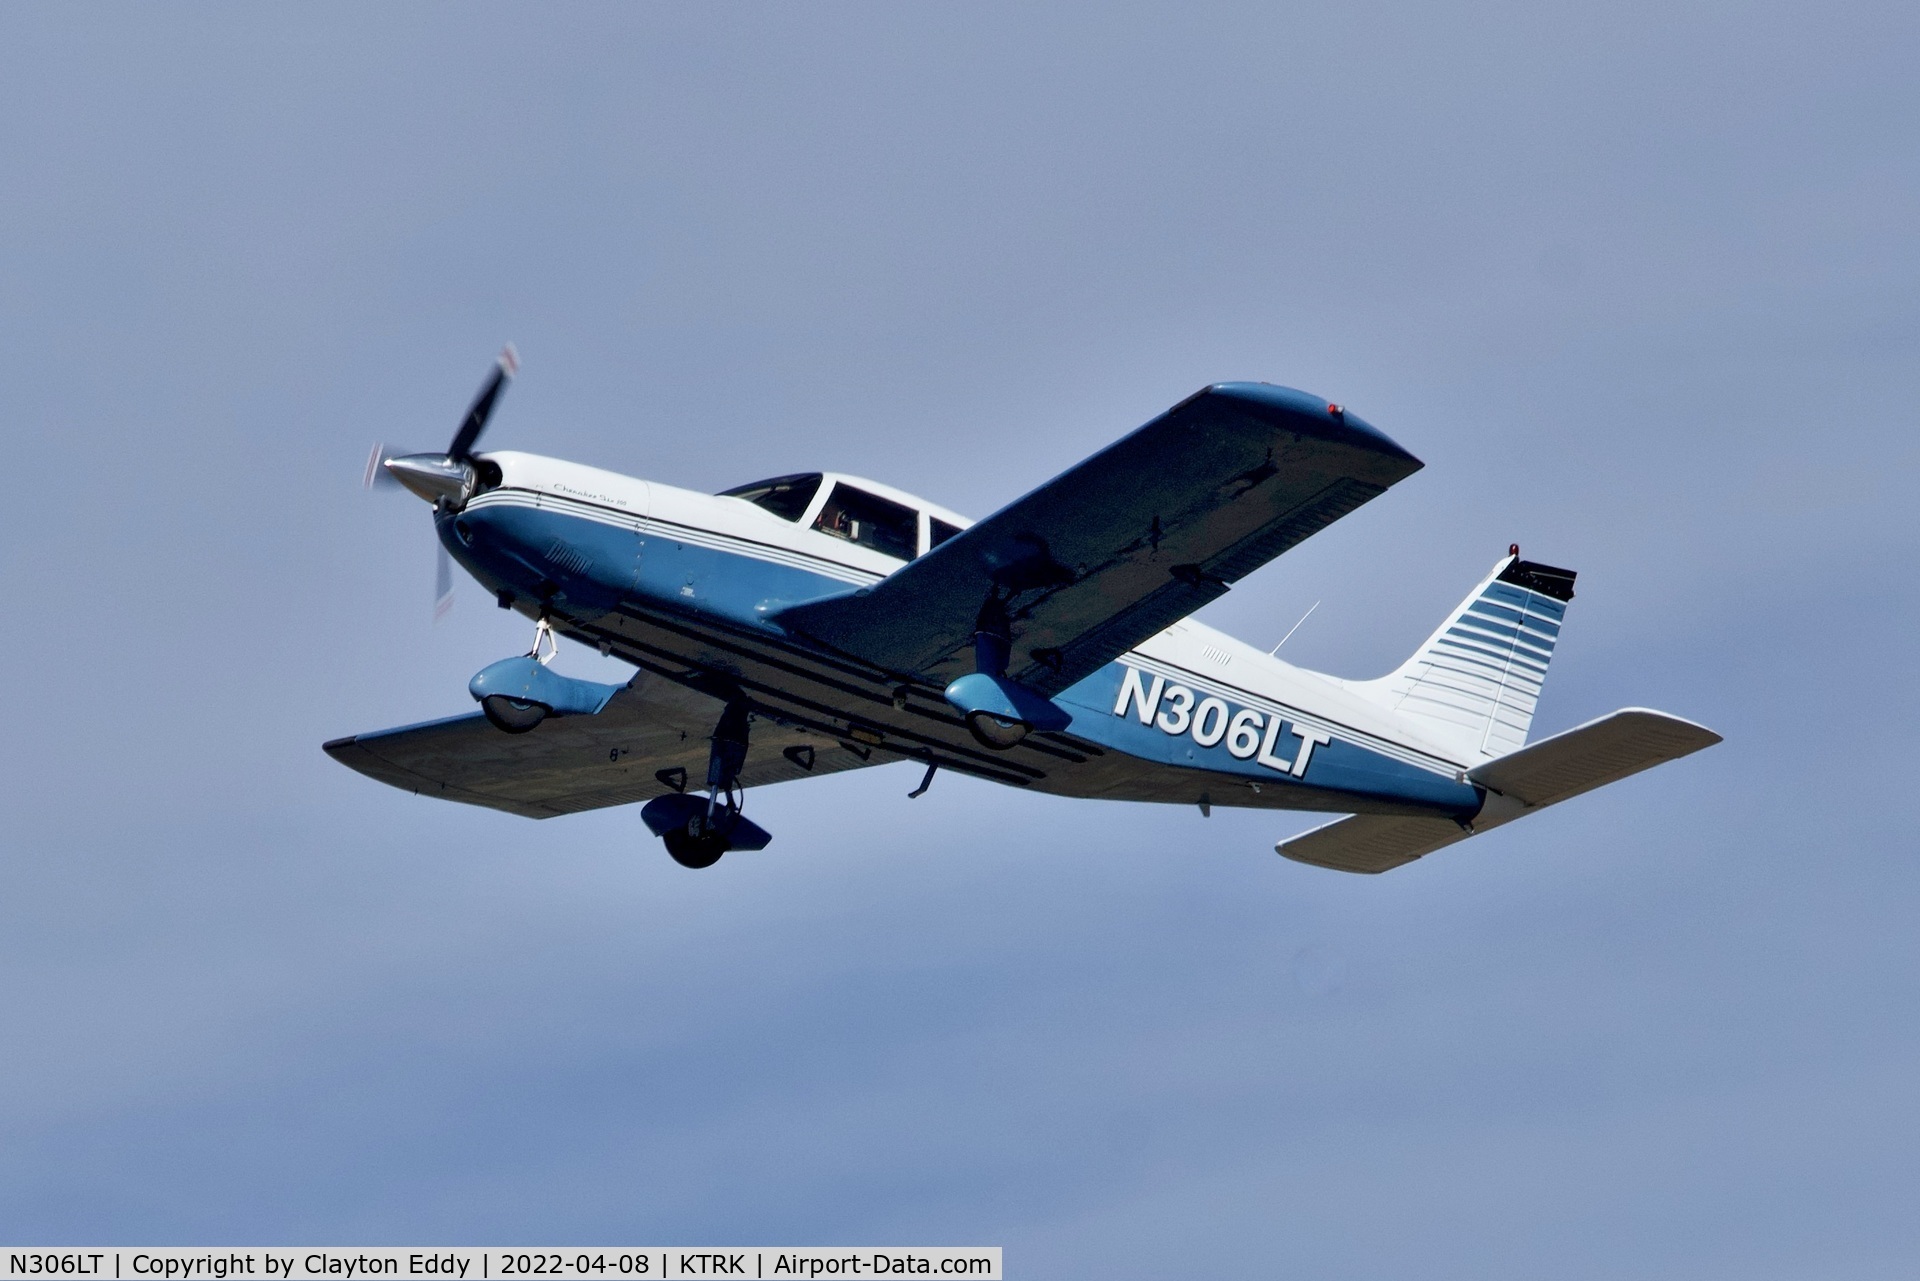 N306LT, 1974 Piper PA-32-300 Cherokee Six C/N 32-7340111, Truckee Tahoe Airport in California 2022.